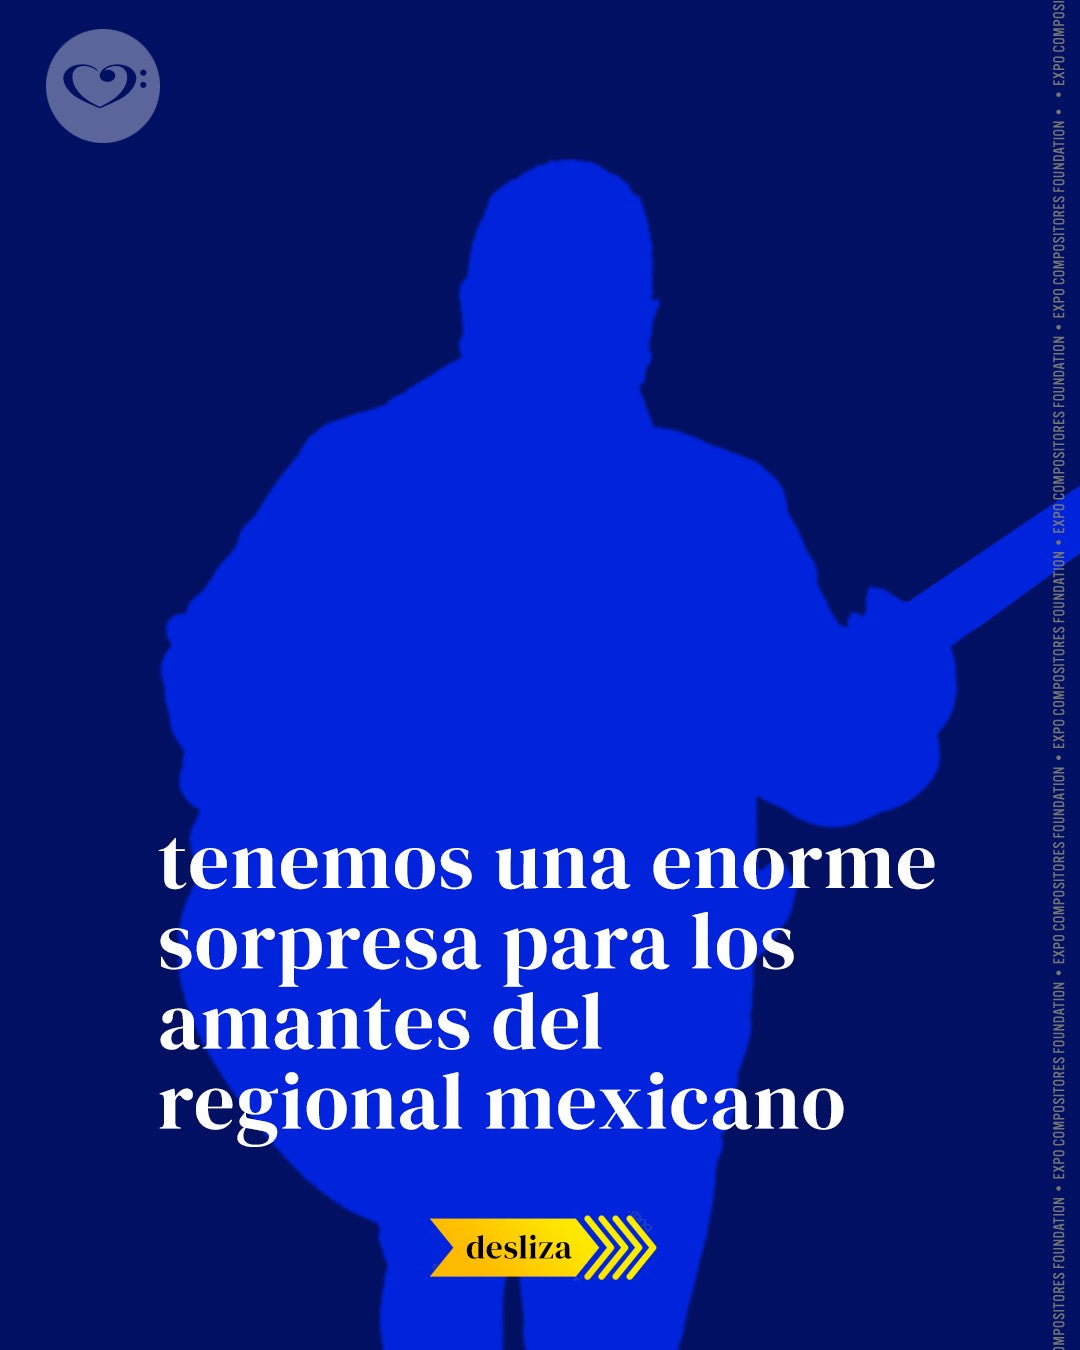 Si eres amante del regional mexicano, te esperamos con una enorme sorpresa.⁠